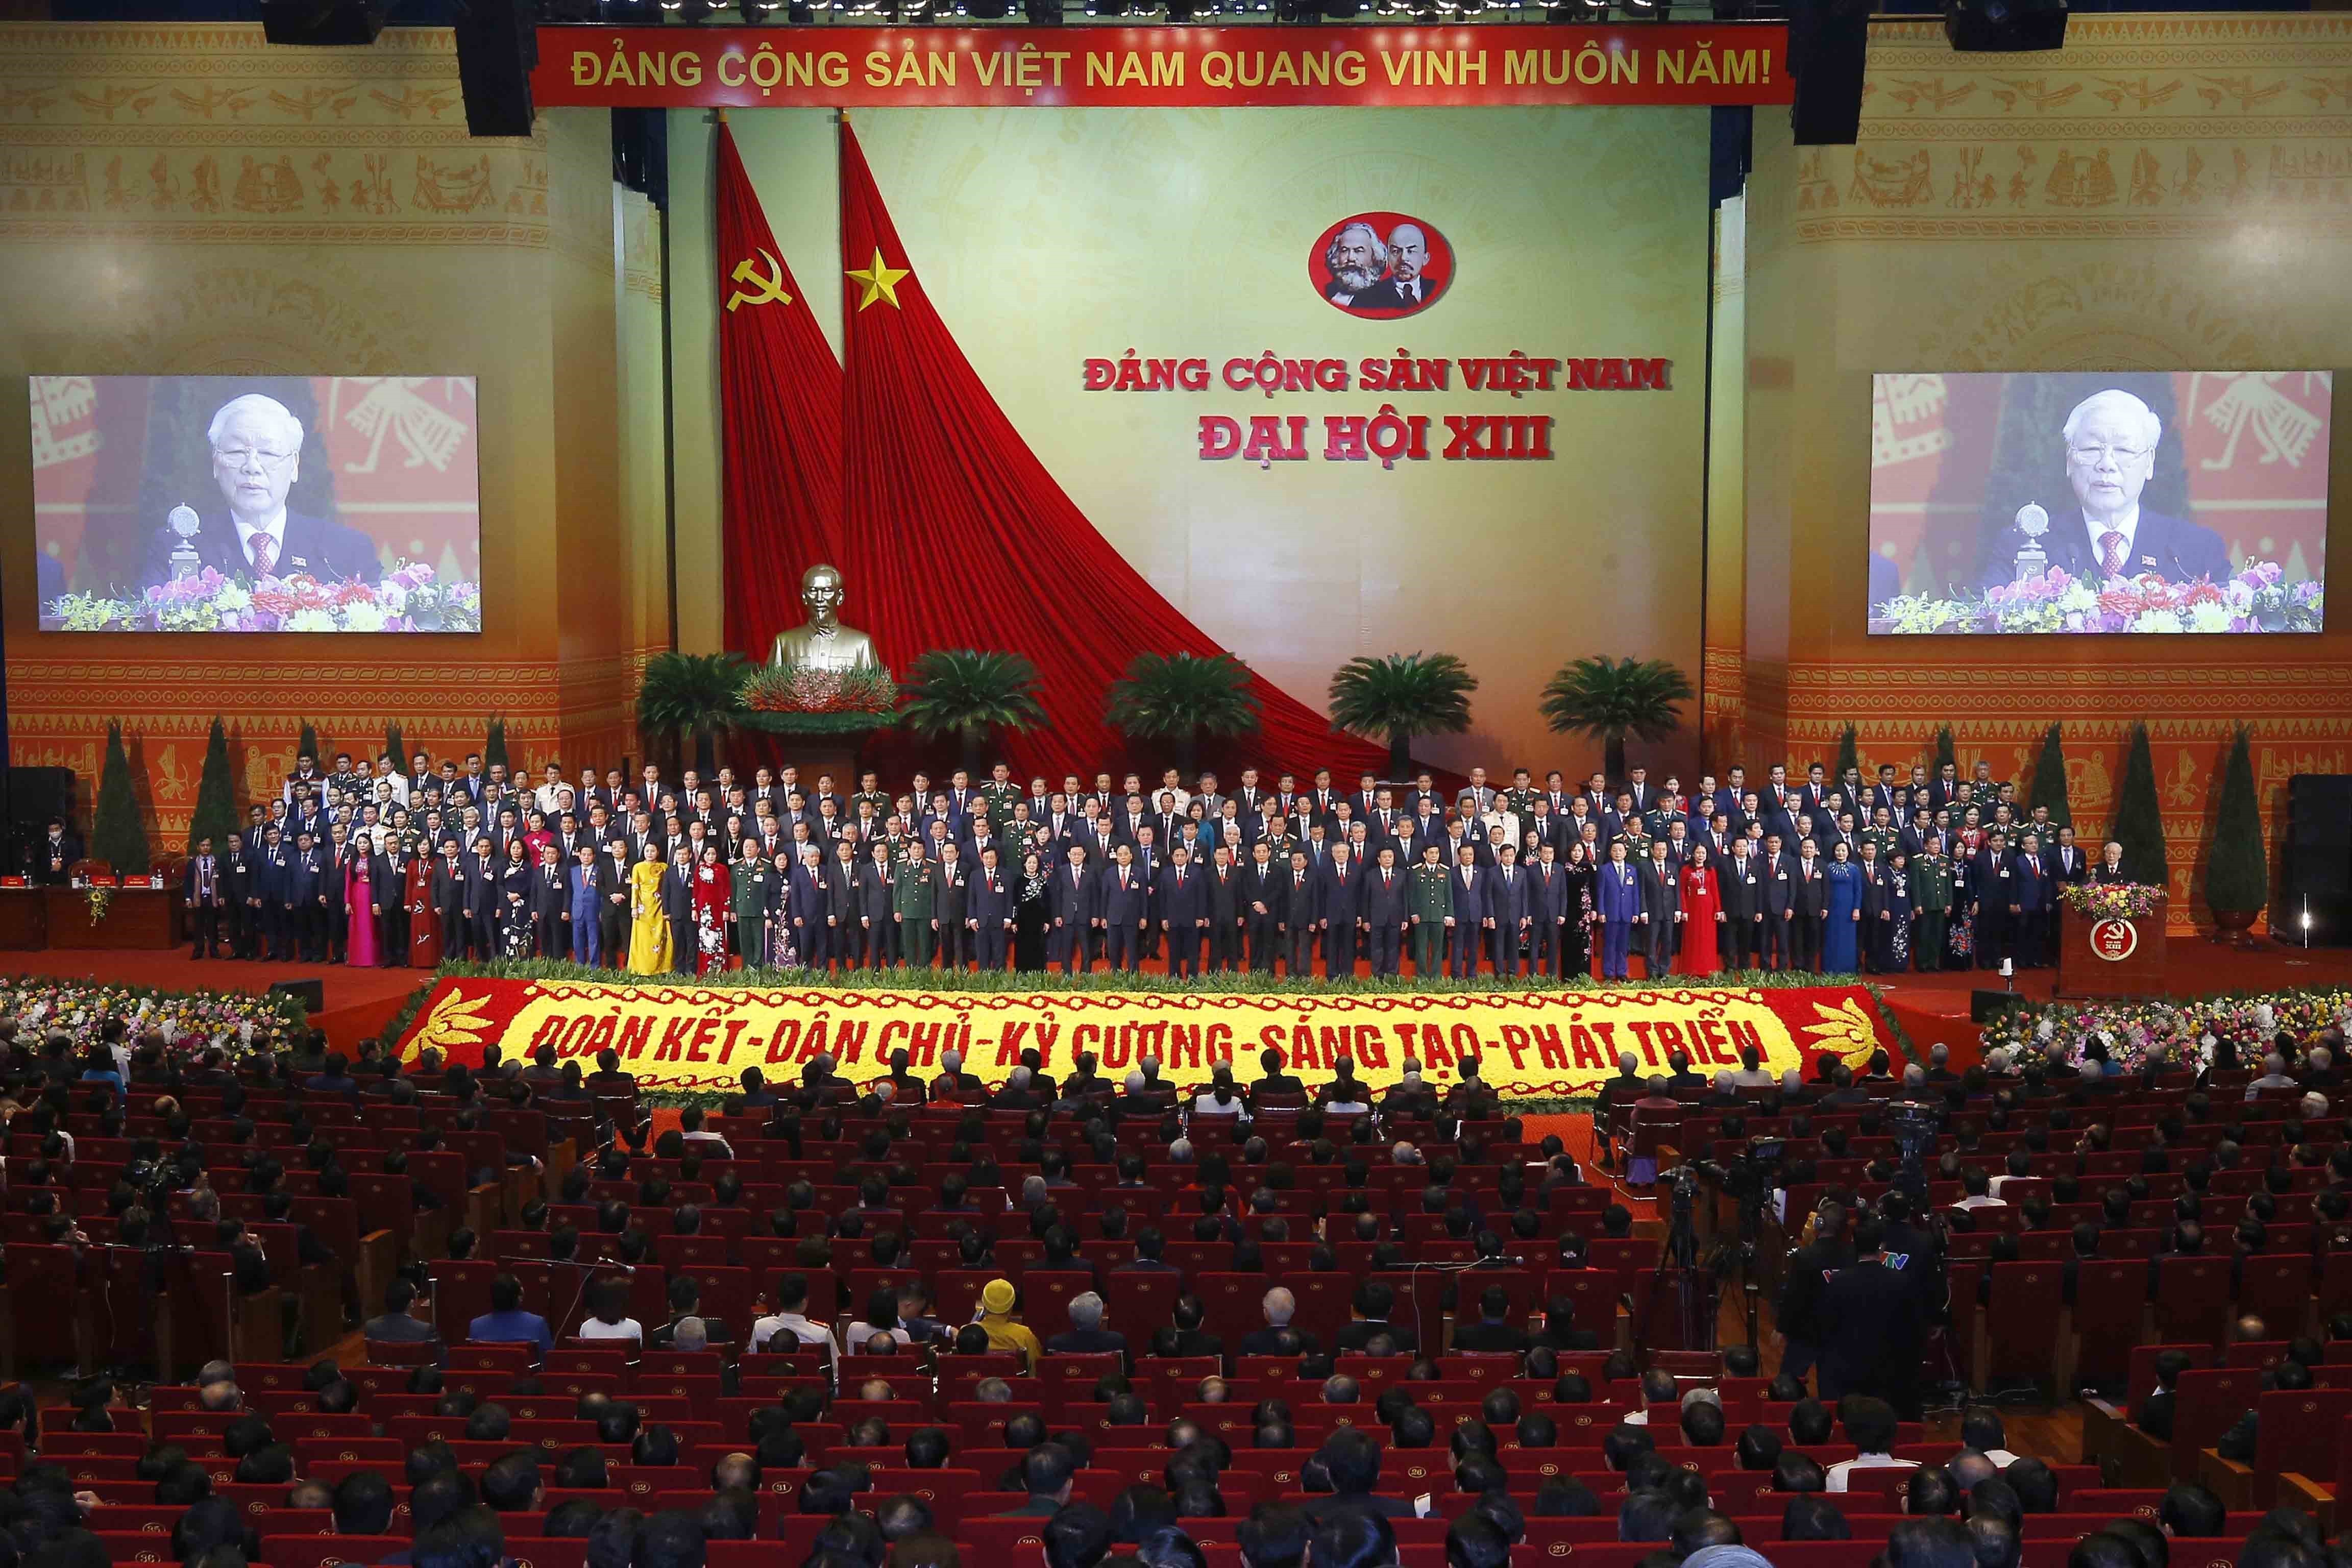 Đồng chí Nguyễn Phú Trọng, Tổng Bí thư BCHTW khóa XIII, Chủ tịch nước CHXHCN Việt Nam thay mặt BCHTW khóa XIII phát biểu ý kiến. (Ảnh: TTXVN)